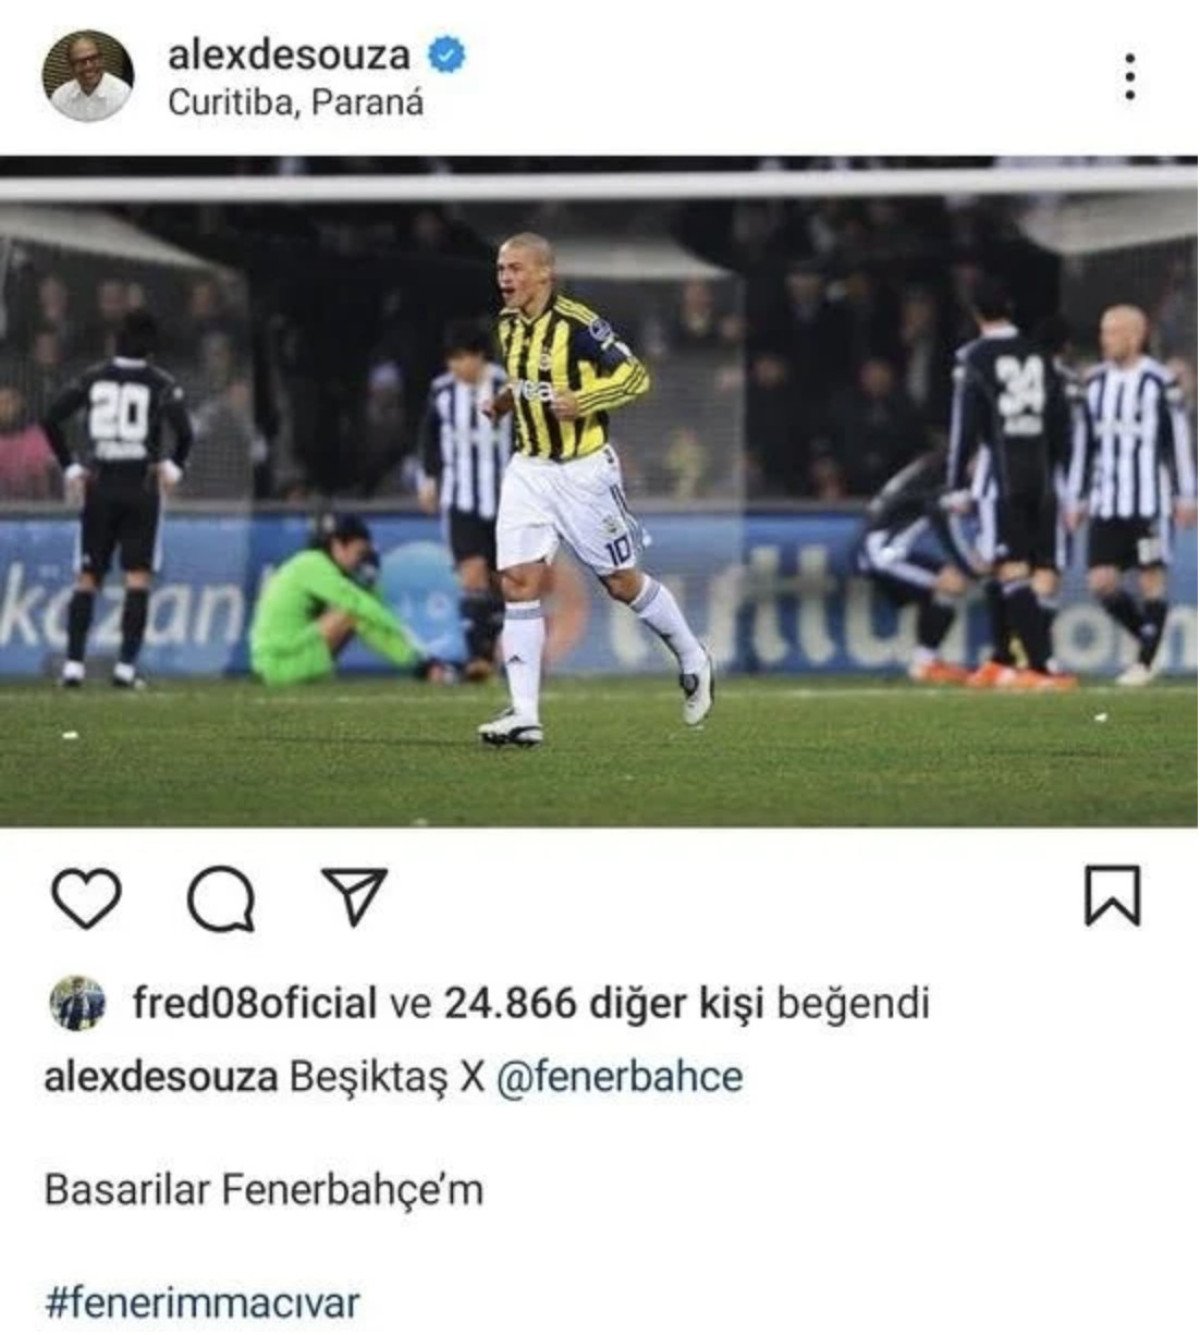 Beşiktaş X Fenerbahçe